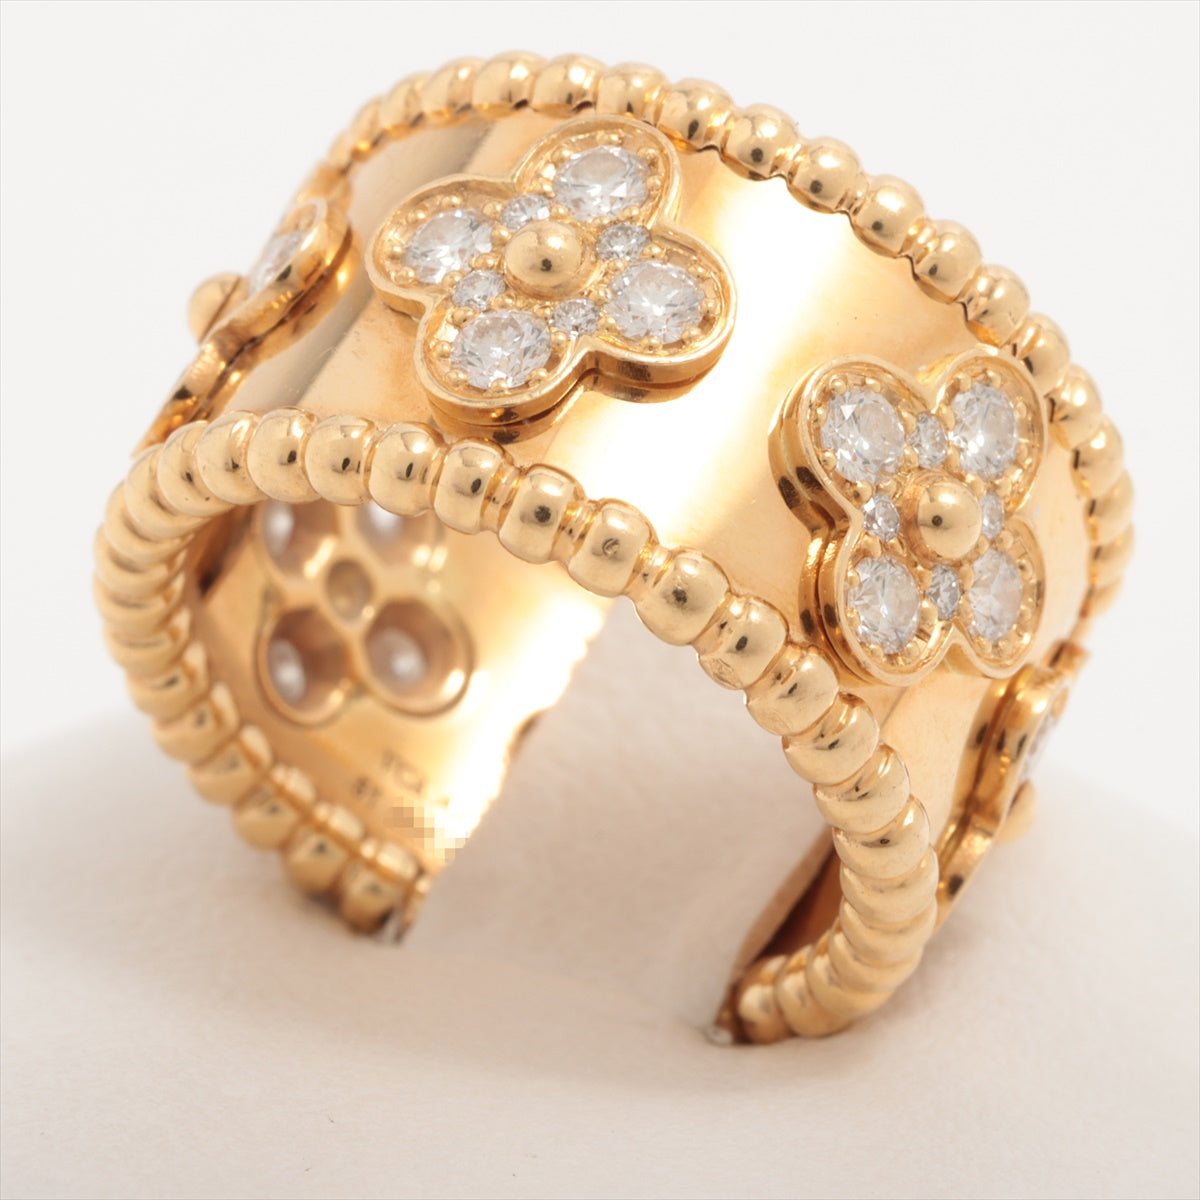 Van Cleef & Arpels PERRELET Clover diamond rings 750(YG) 12.4g 51